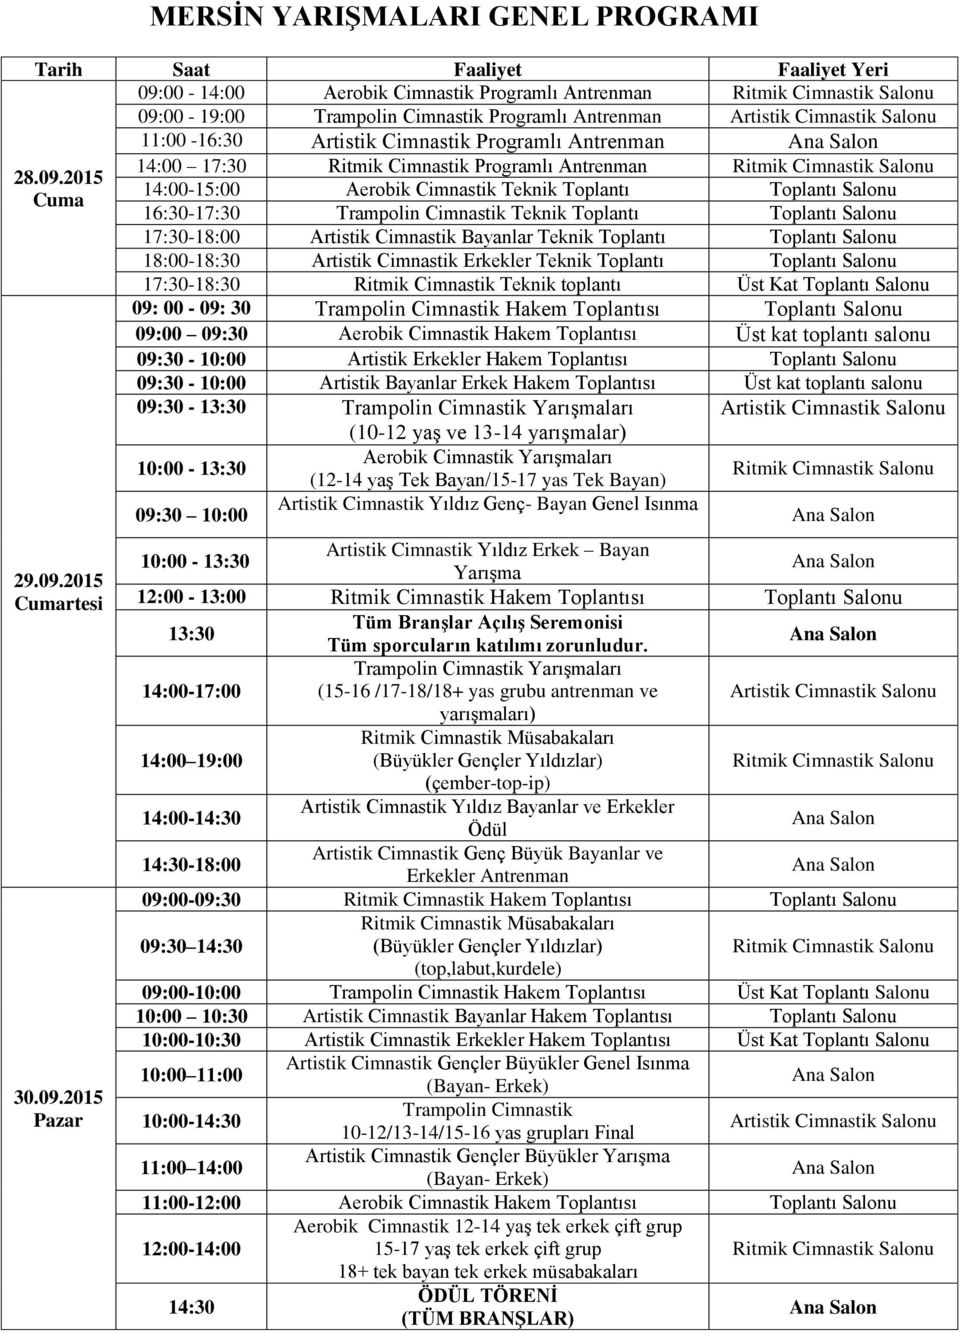 2015 14:00-15:00 Aerobik Cimnastik Teknik Toplantı Toplantı Salonu Cuma 16:30-17:30 Trampolin Cimnastik Teknik Toplantı Toplantı Salonu 17:30-18:00 Artistik Cimnastik Bayanlar Teknik Toplantı